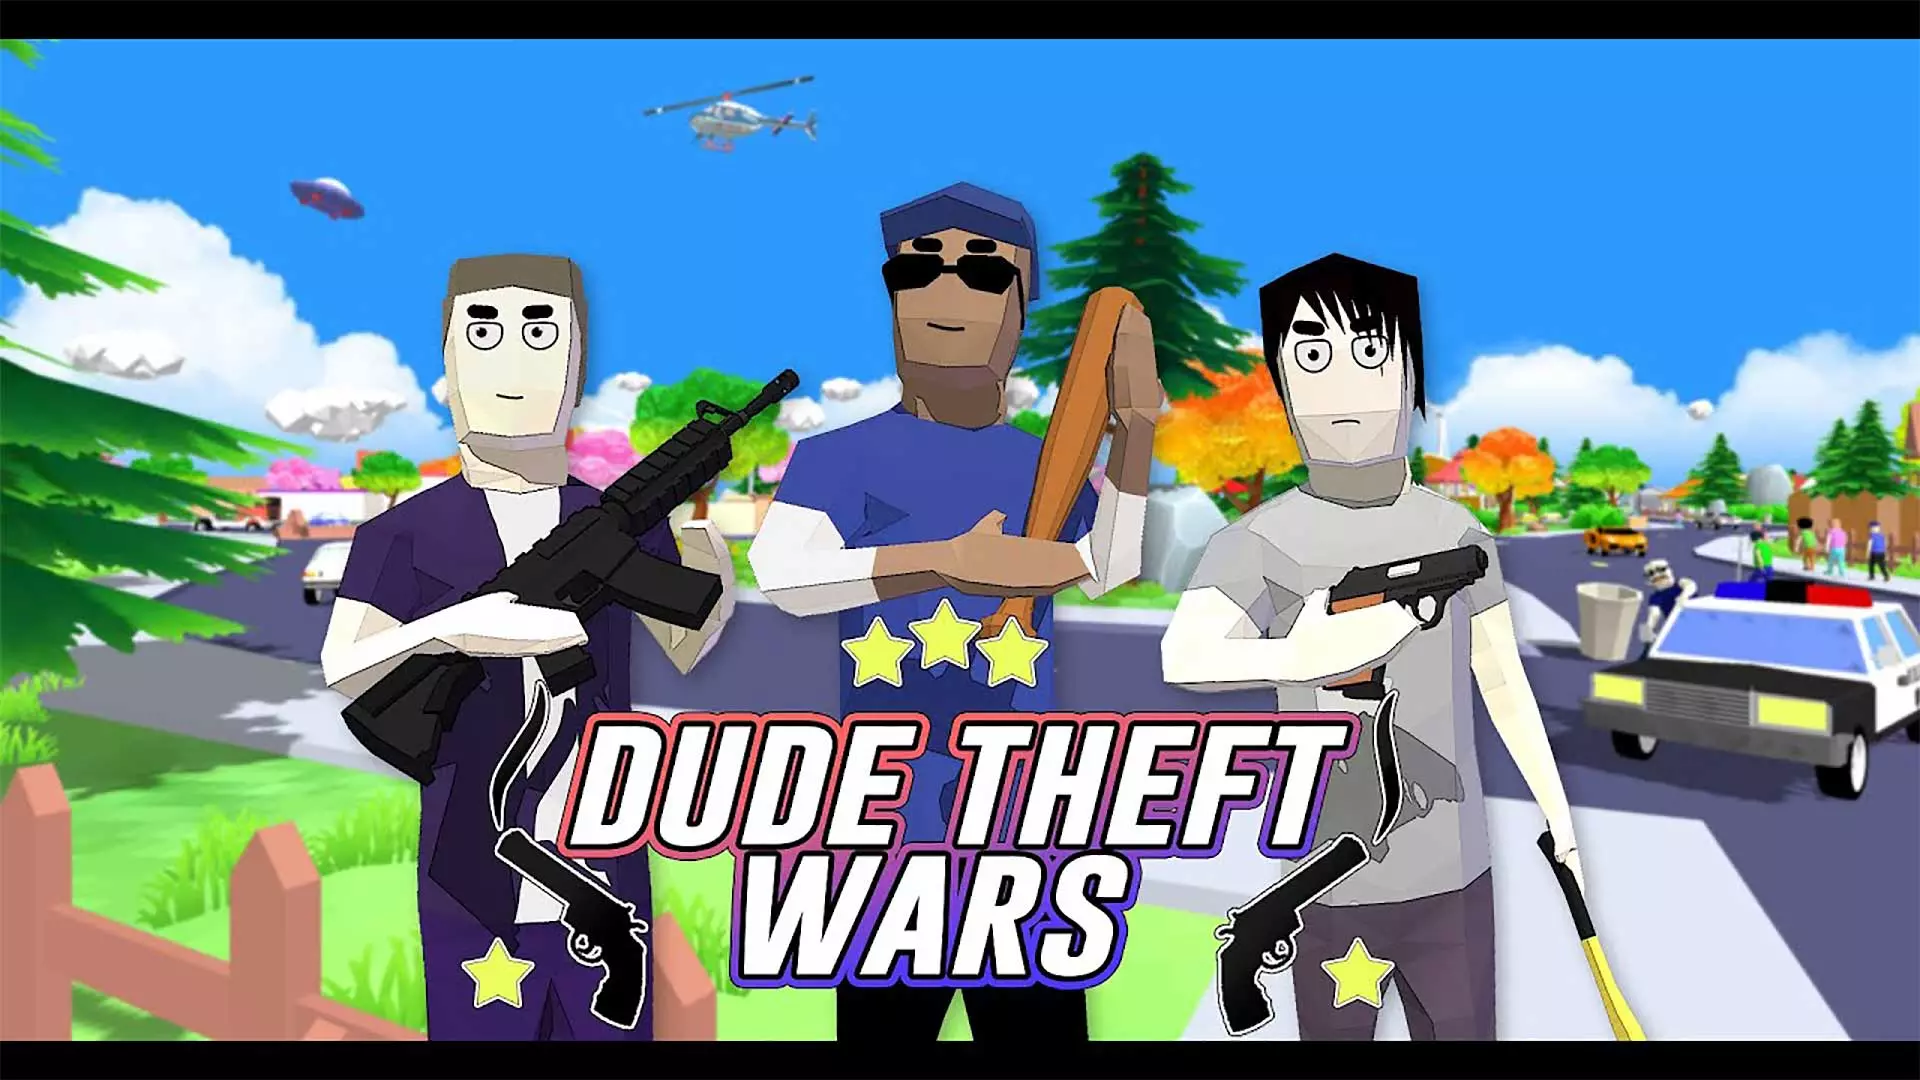 Dude Theft Wars. Dude Theft Wars полиция. Dude Theft Wars 2017. Дуде Зефт ВАРС. Dude theft wars offline